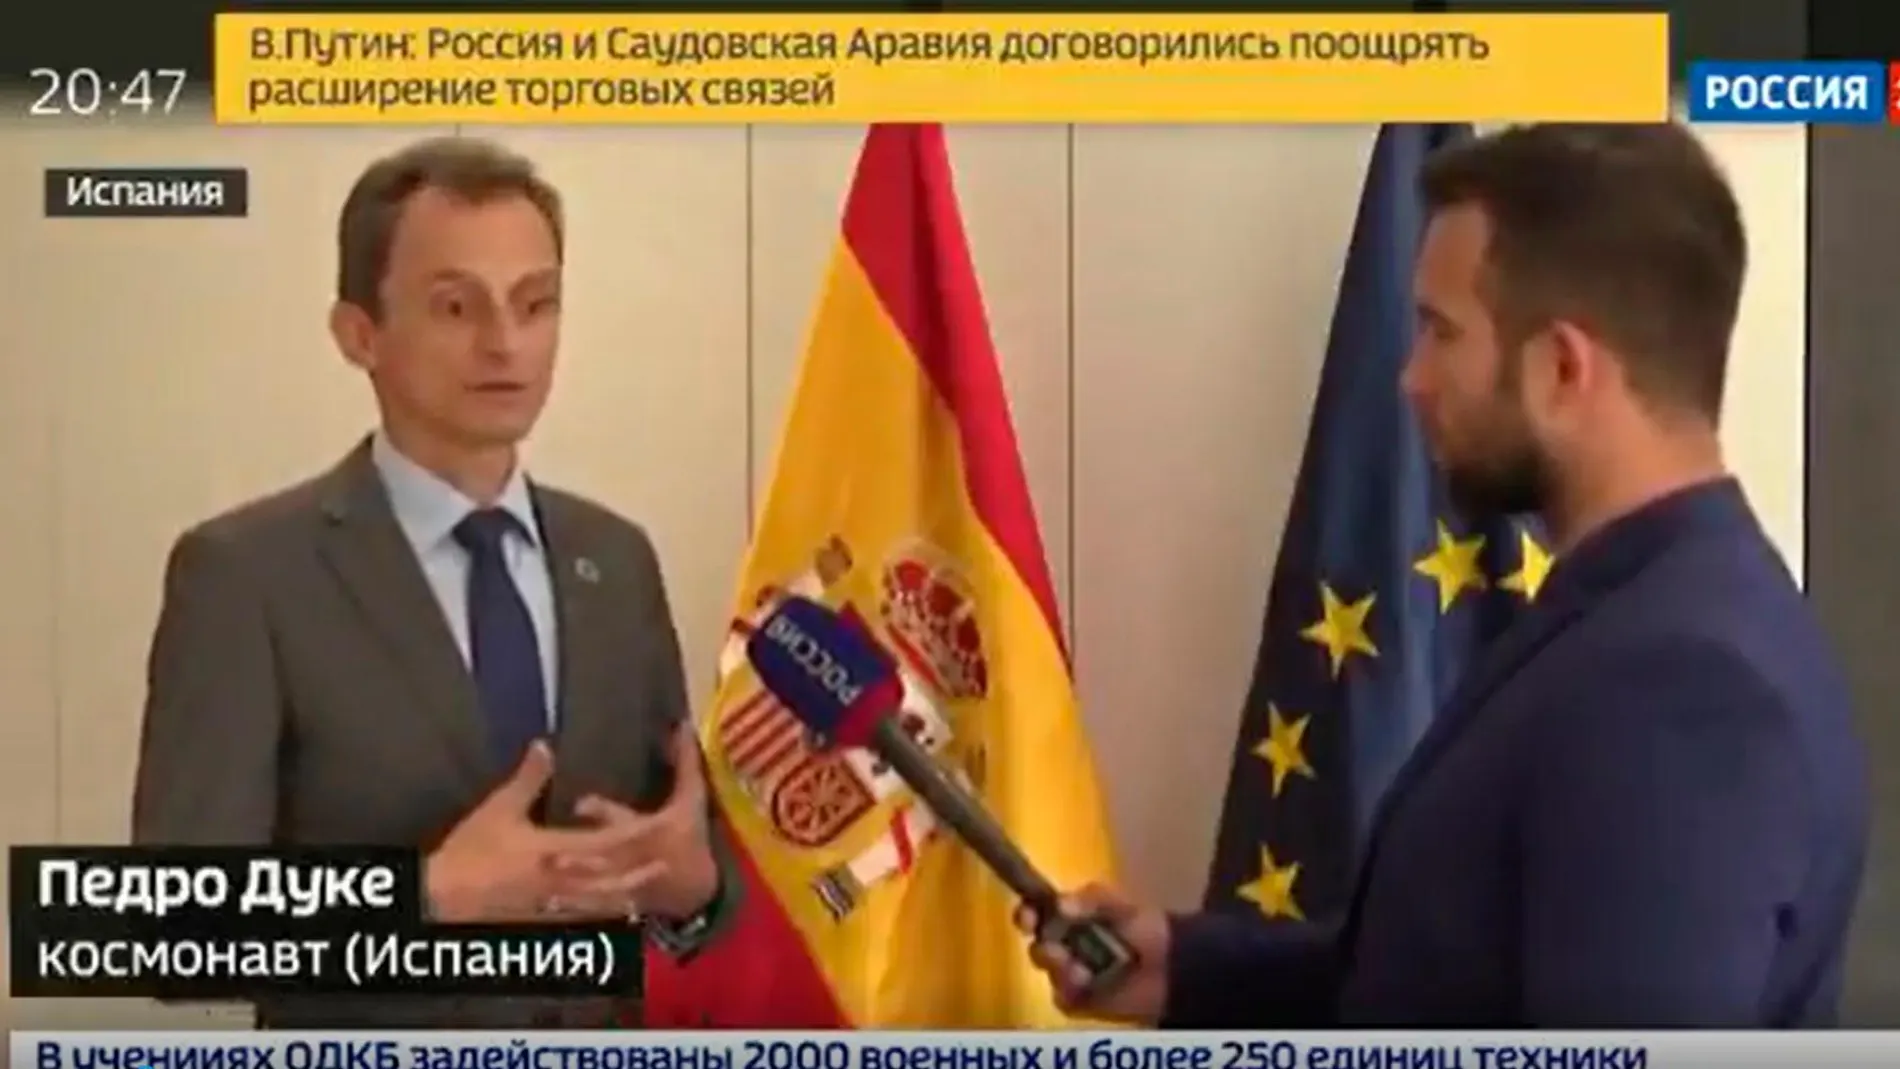 El ministro Duque durante su intervención en la televisión rusa